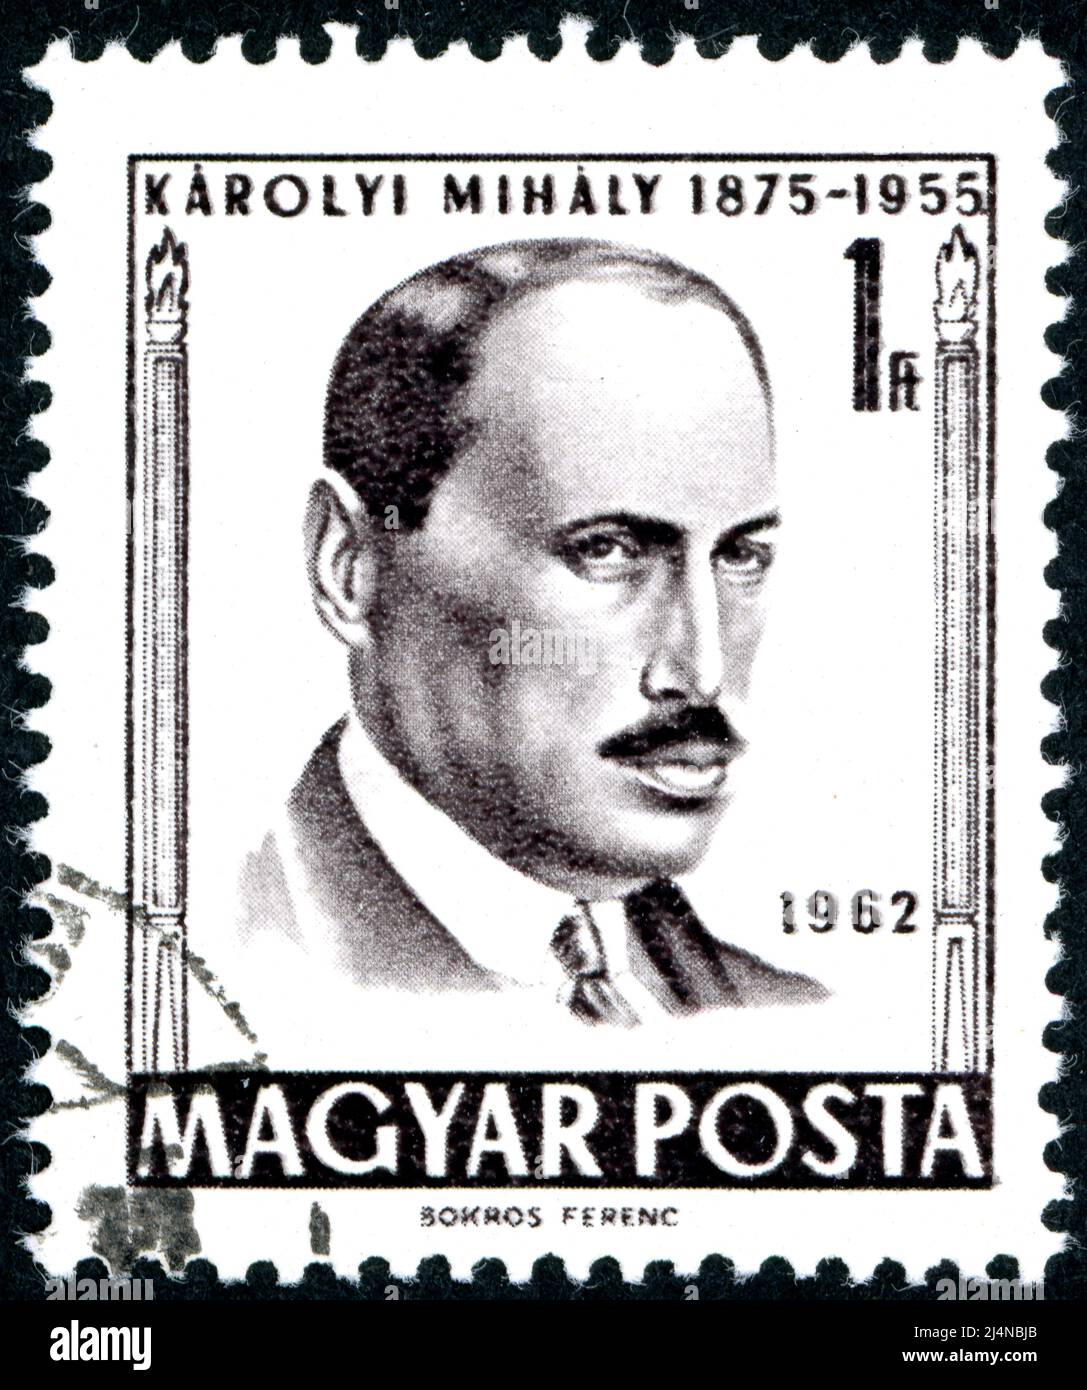 UNGARN - UM 1962: Briefmarke gedruckt in Ungarn, zeigt Porträt eines ungarischen Politikers Mihaly Karolyi, um 1962 Stockfoto